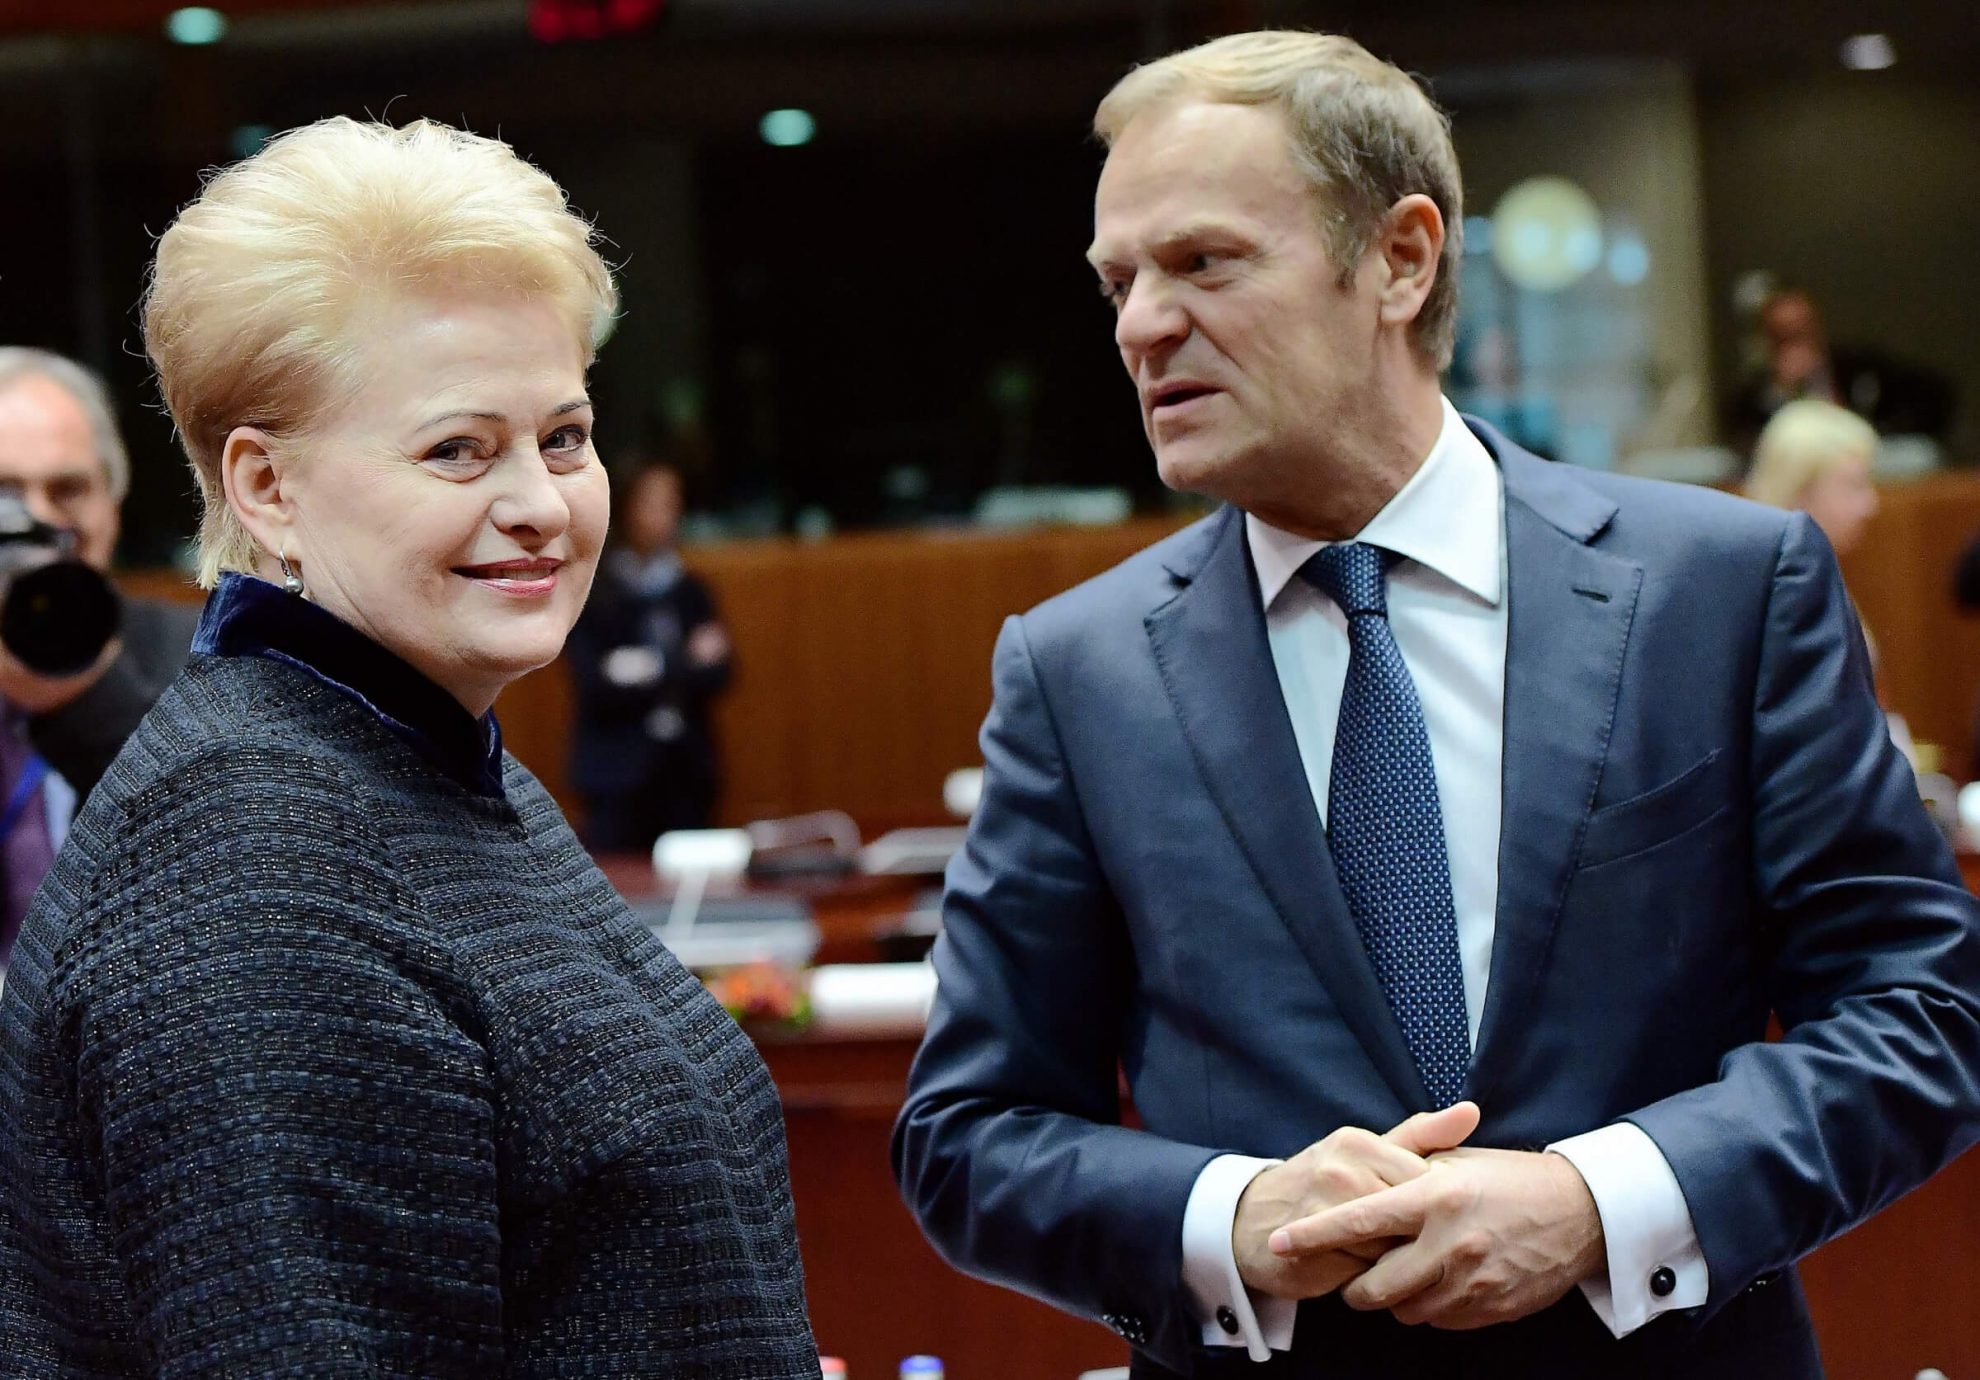 ES institucijų darbuotojų ir ekspertų apklausa rodo, kad Dalia Grybauskaitė yra tarp favoritų nuo 2019 metų vadovauti Europos Vadovų Tarybai